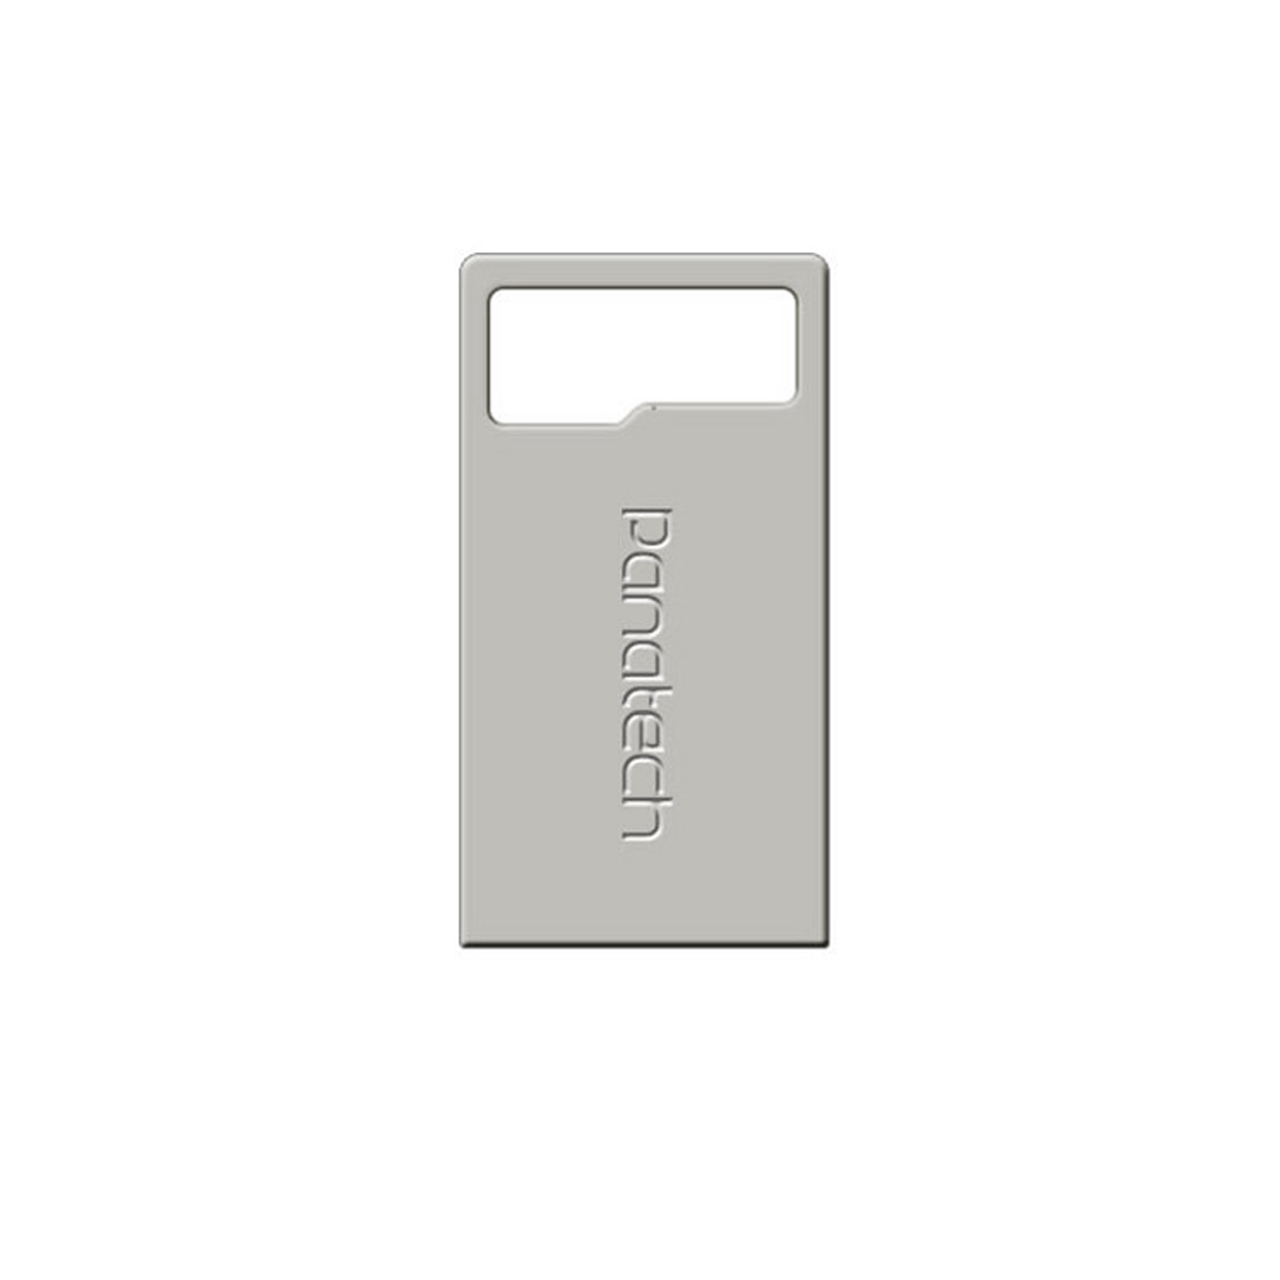 فلش Panatech P404 USB2.0 Flash Memory - 32GB